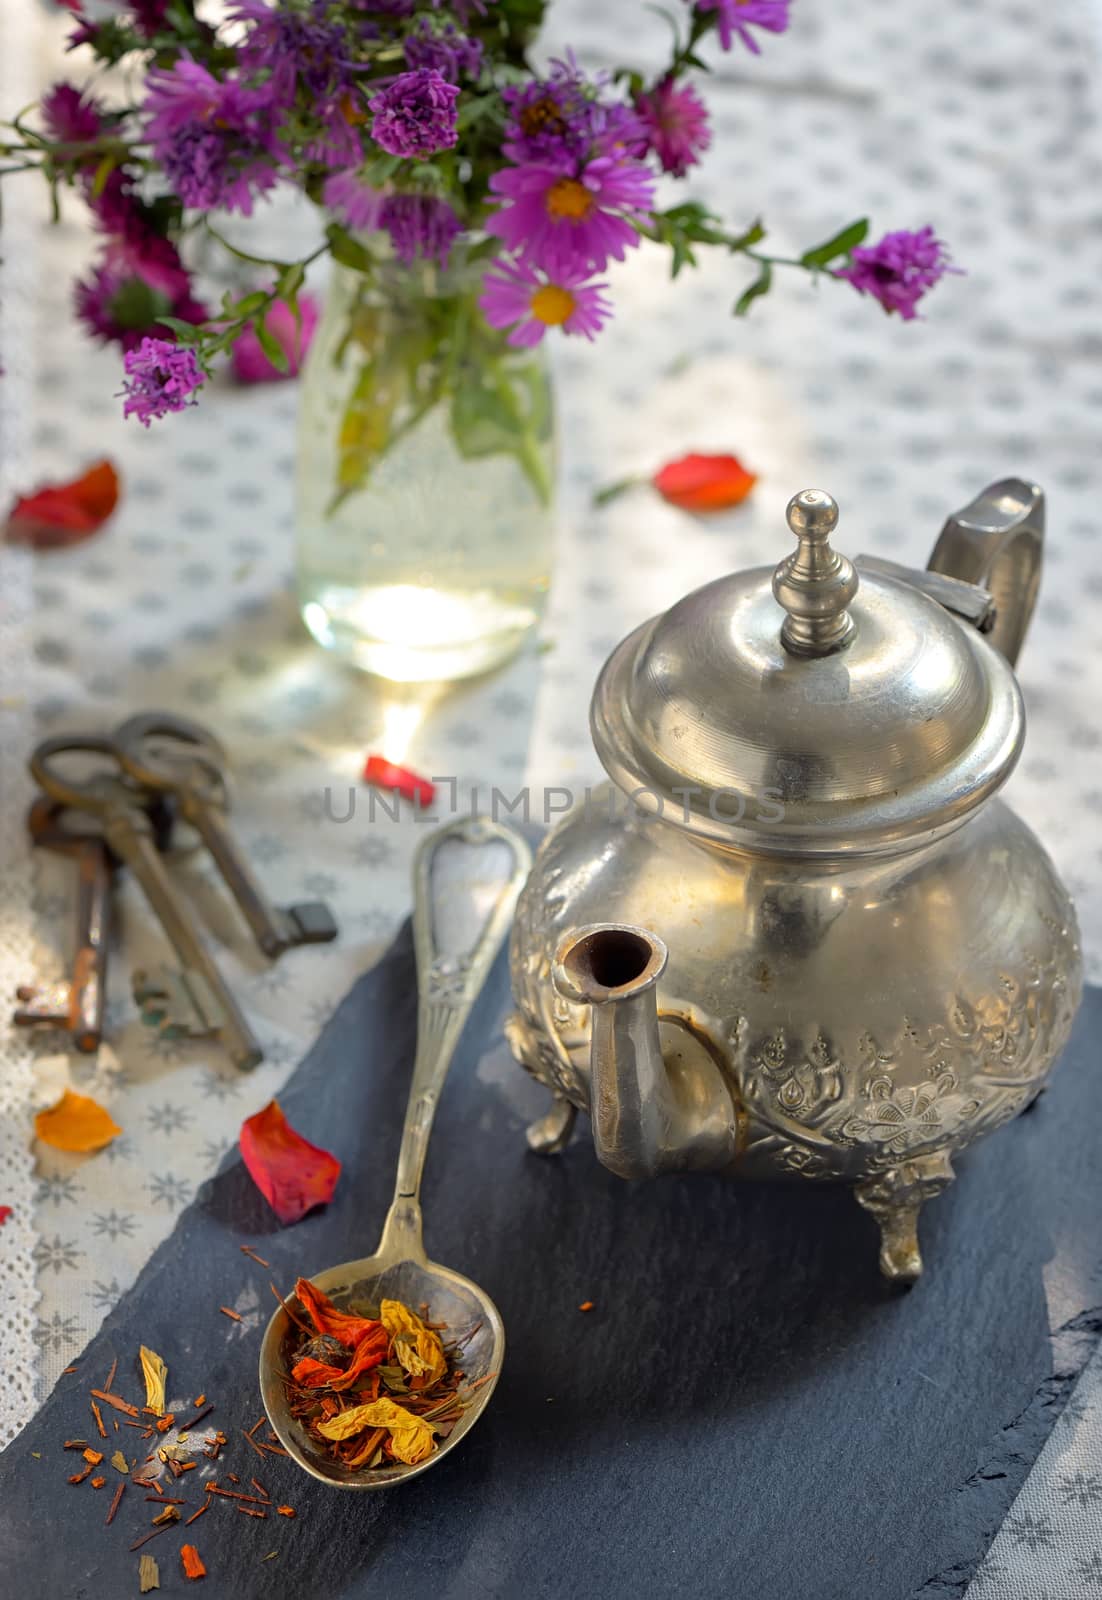 Dry tea leaves on spoon by jordachelr